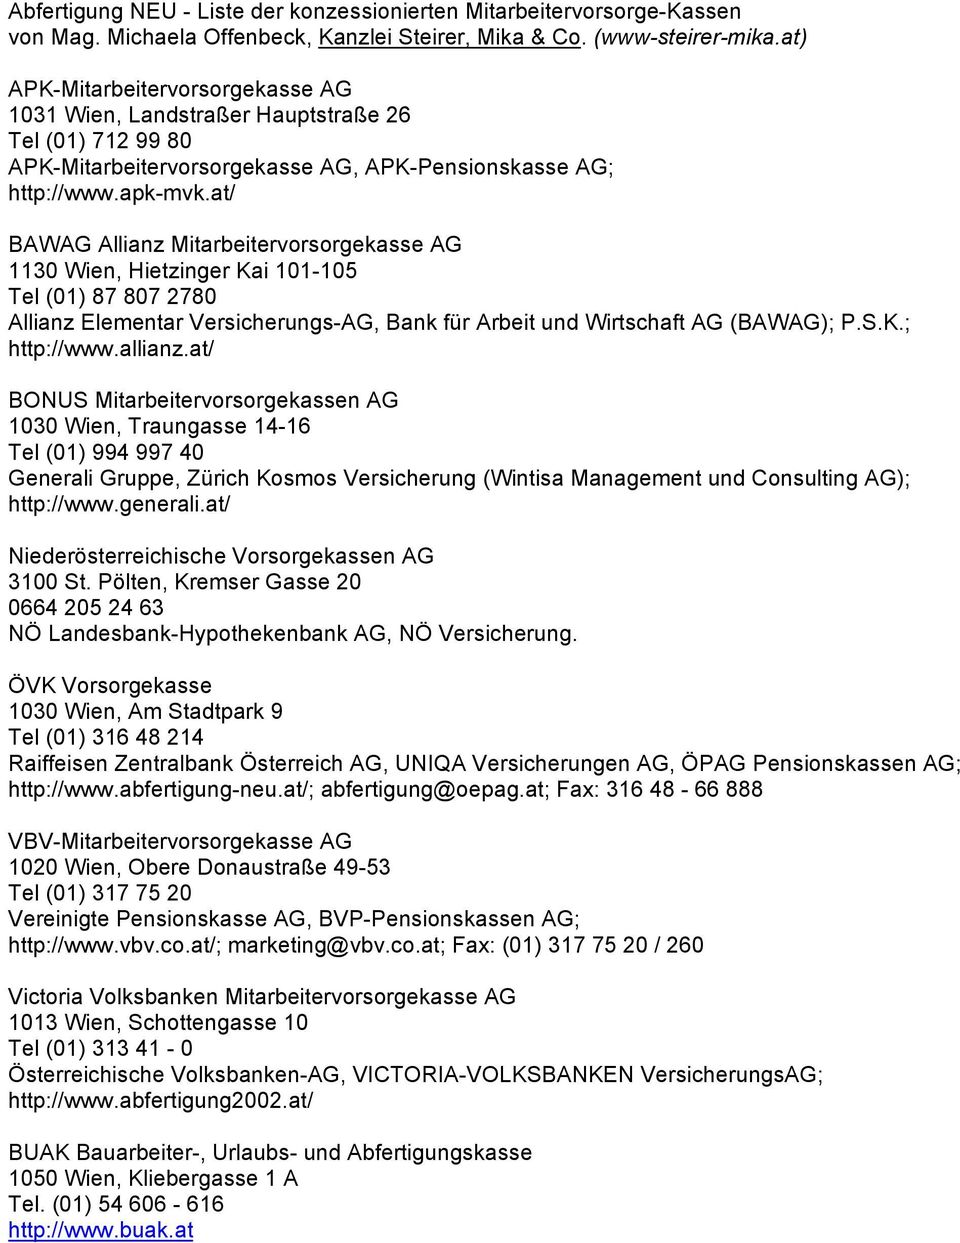 at/ BAWAG Allianz Mitarbeitervorsorgekasse AG 1130 Wien, Hietzinger Kai 101-105 Tel (01) 87 807 2780 Allianz Elementar Versicherungs-AG, Bank für Arbeit und Wirtschaft AG (BAWAG); P.S.K.; http://www.